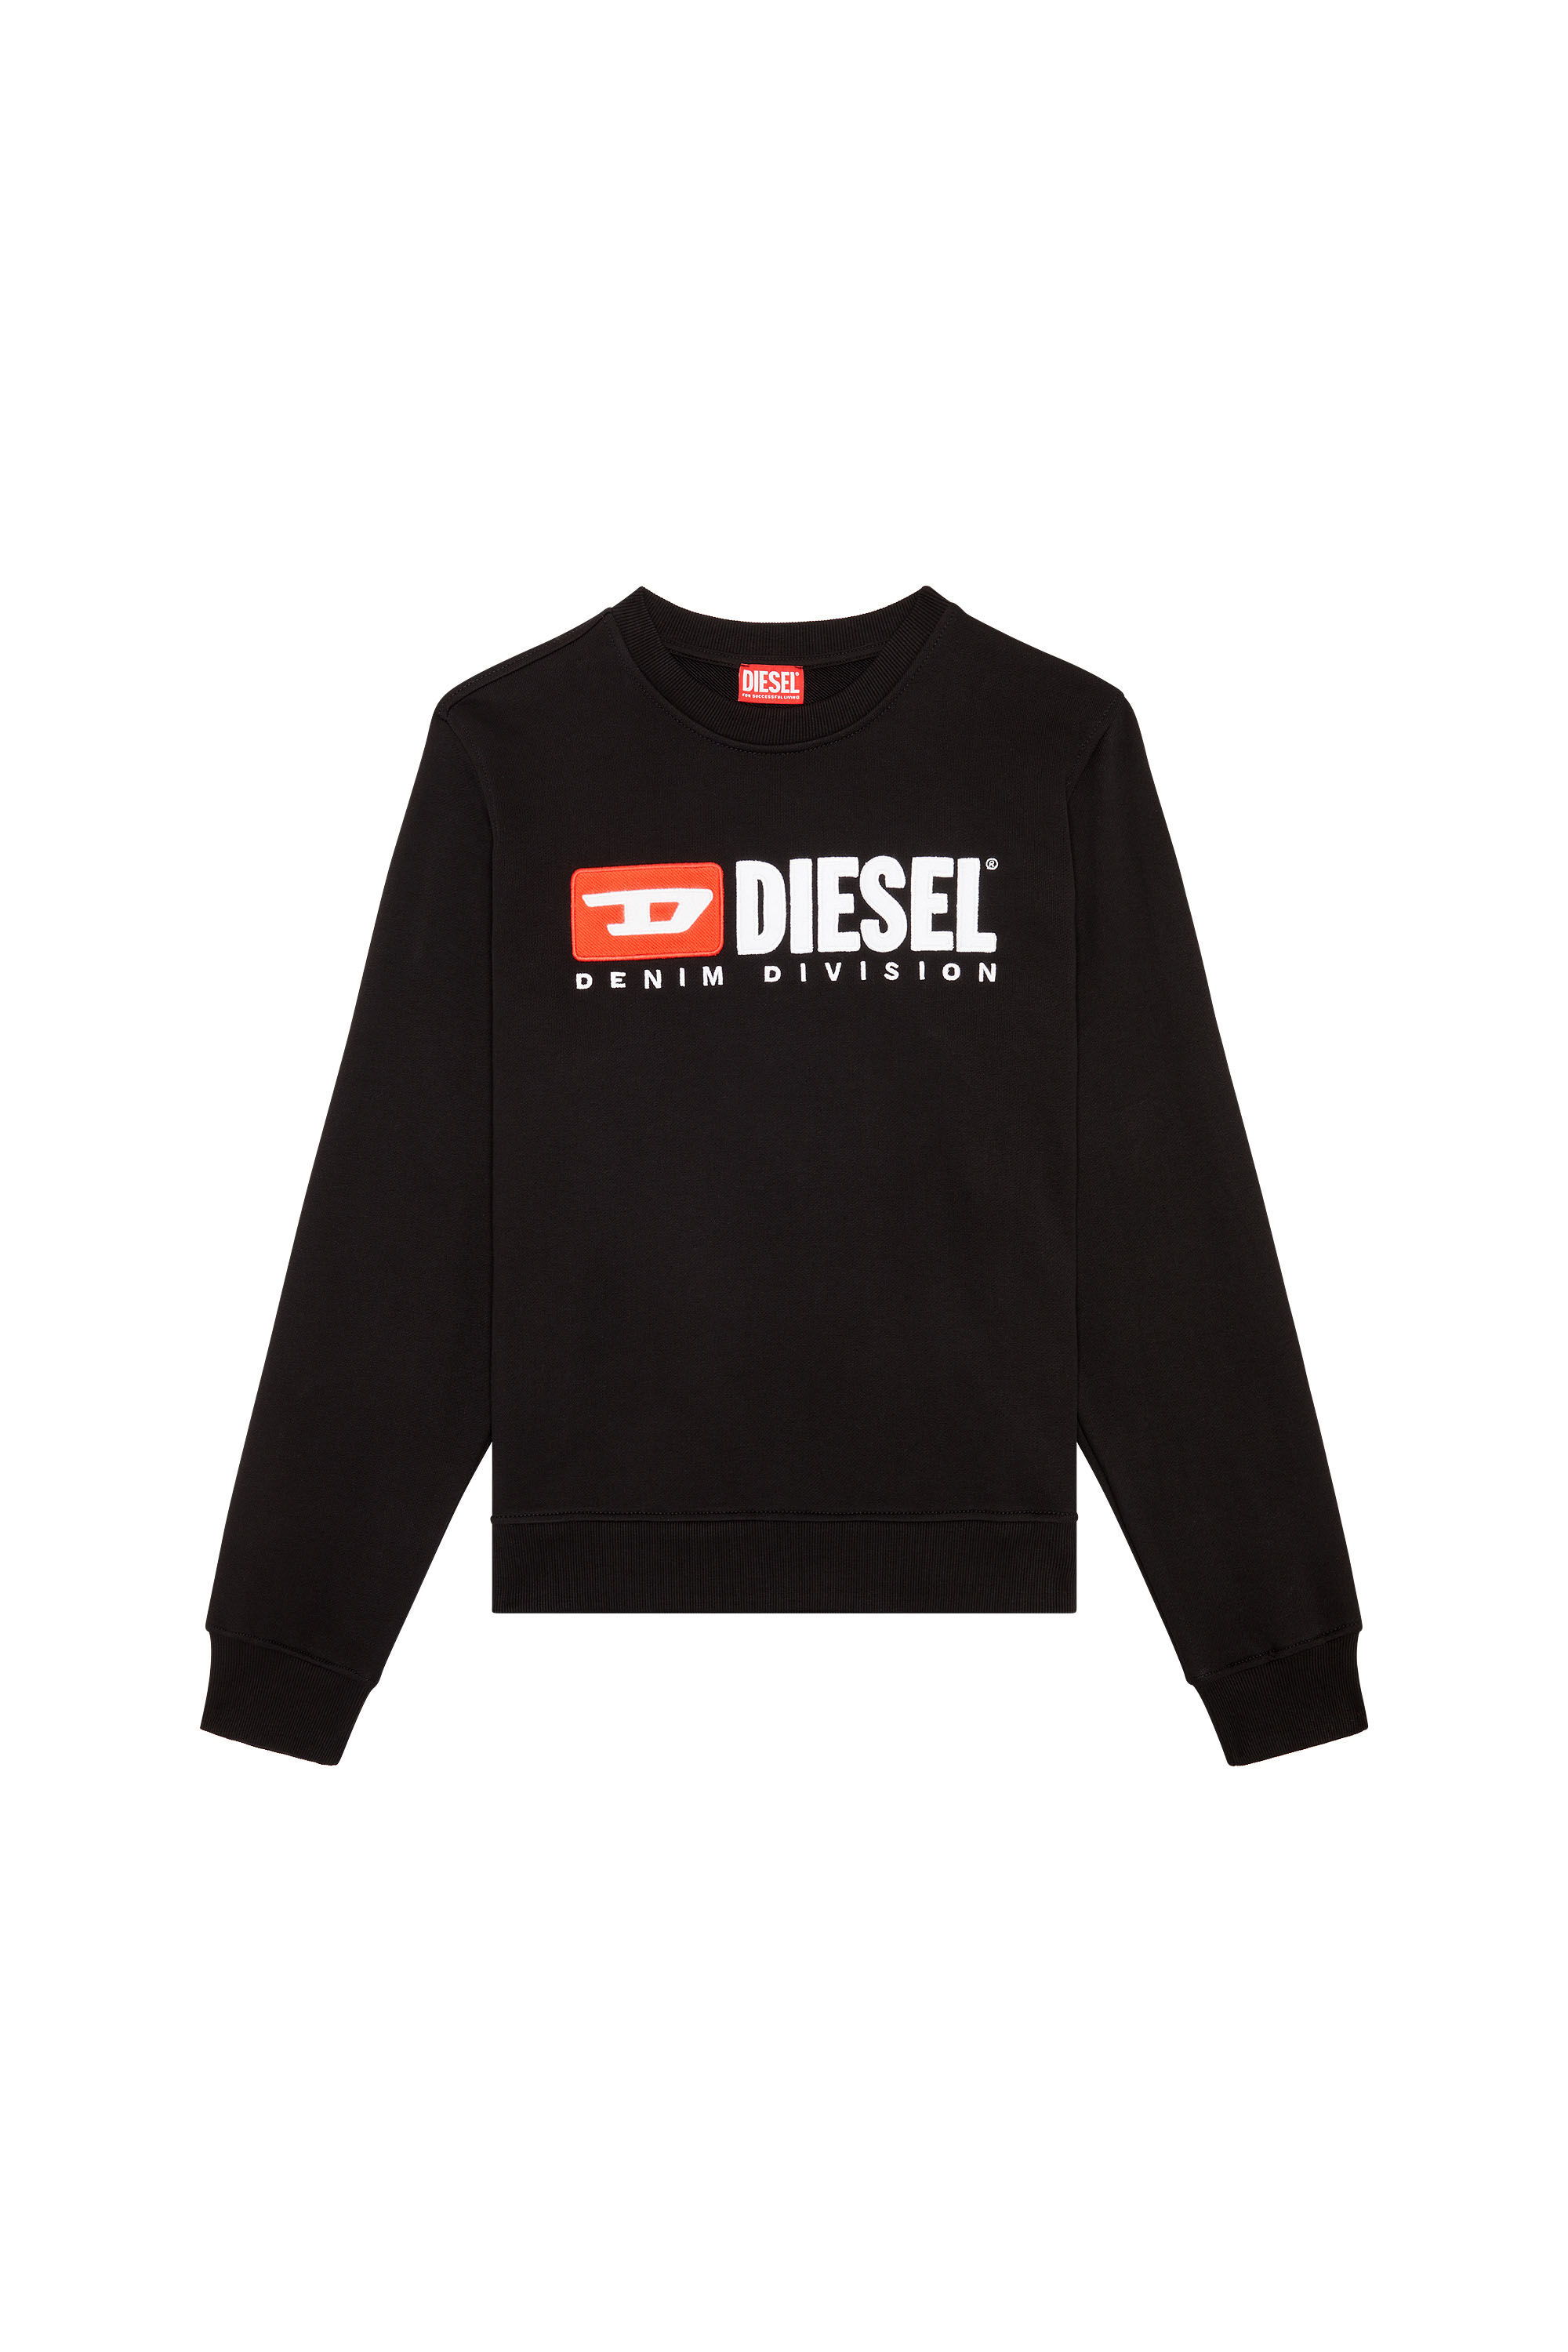 Diesel - S-GINN-DIV, Schwarz - Image 2